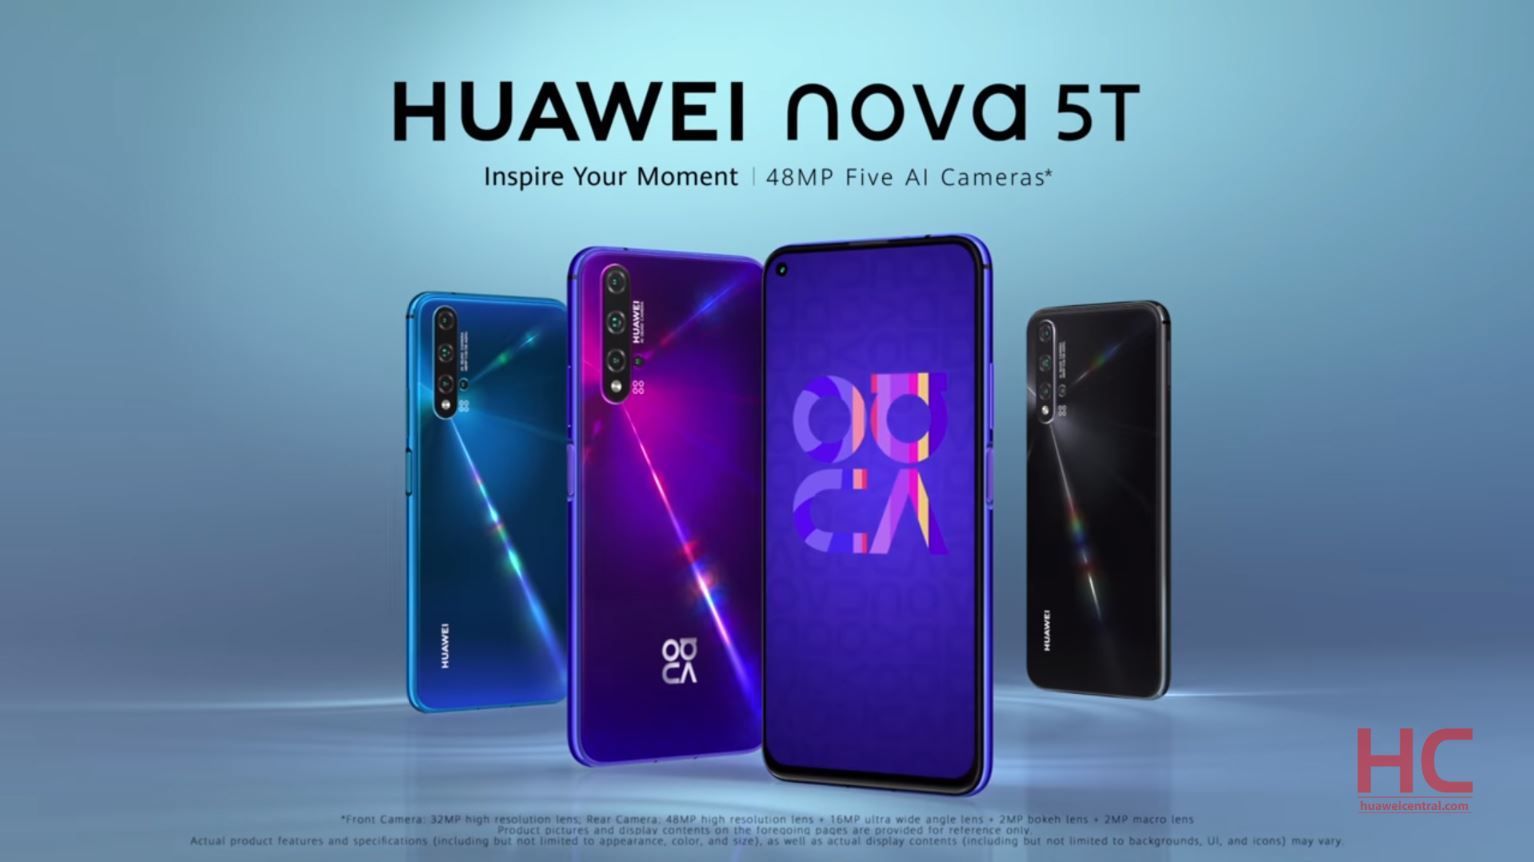 Huawei Nova 5T официально выпущен с дырочным дисплеем и четырехъядерной камерой, проверьте характеристики и цену